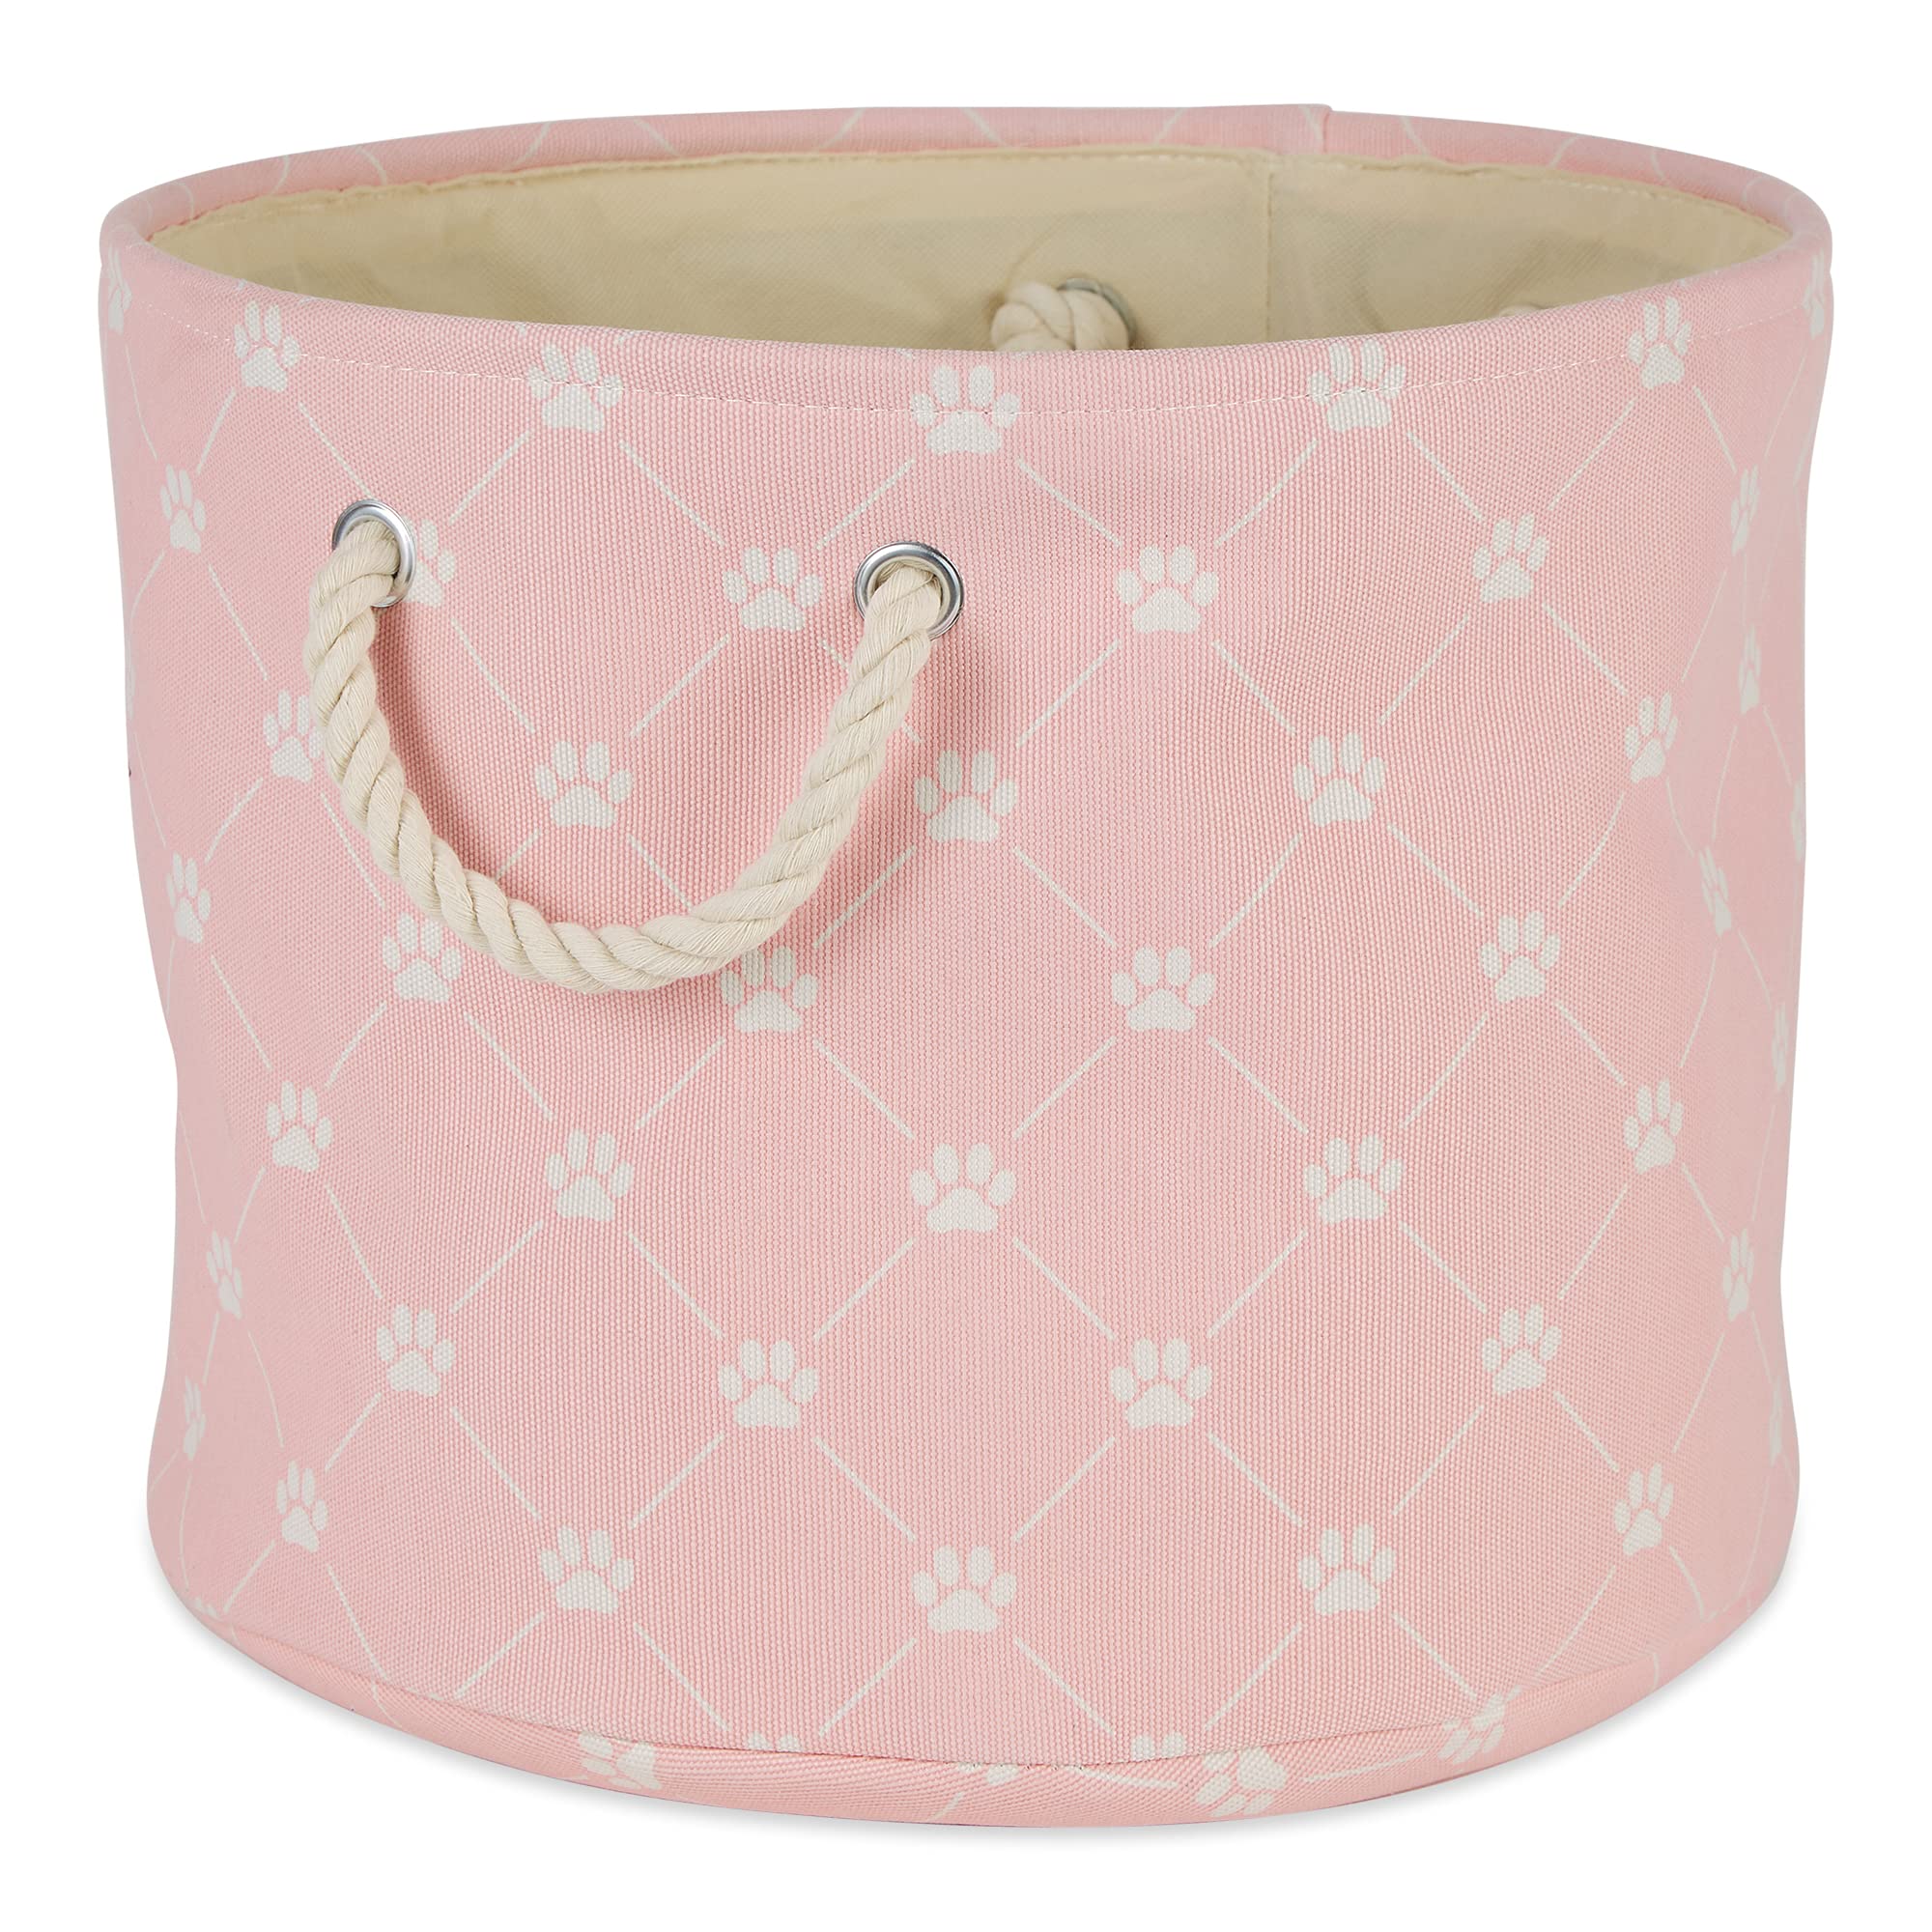 Design Imports DII Polyester Pet Bin Trellis Paw Pink Round Large